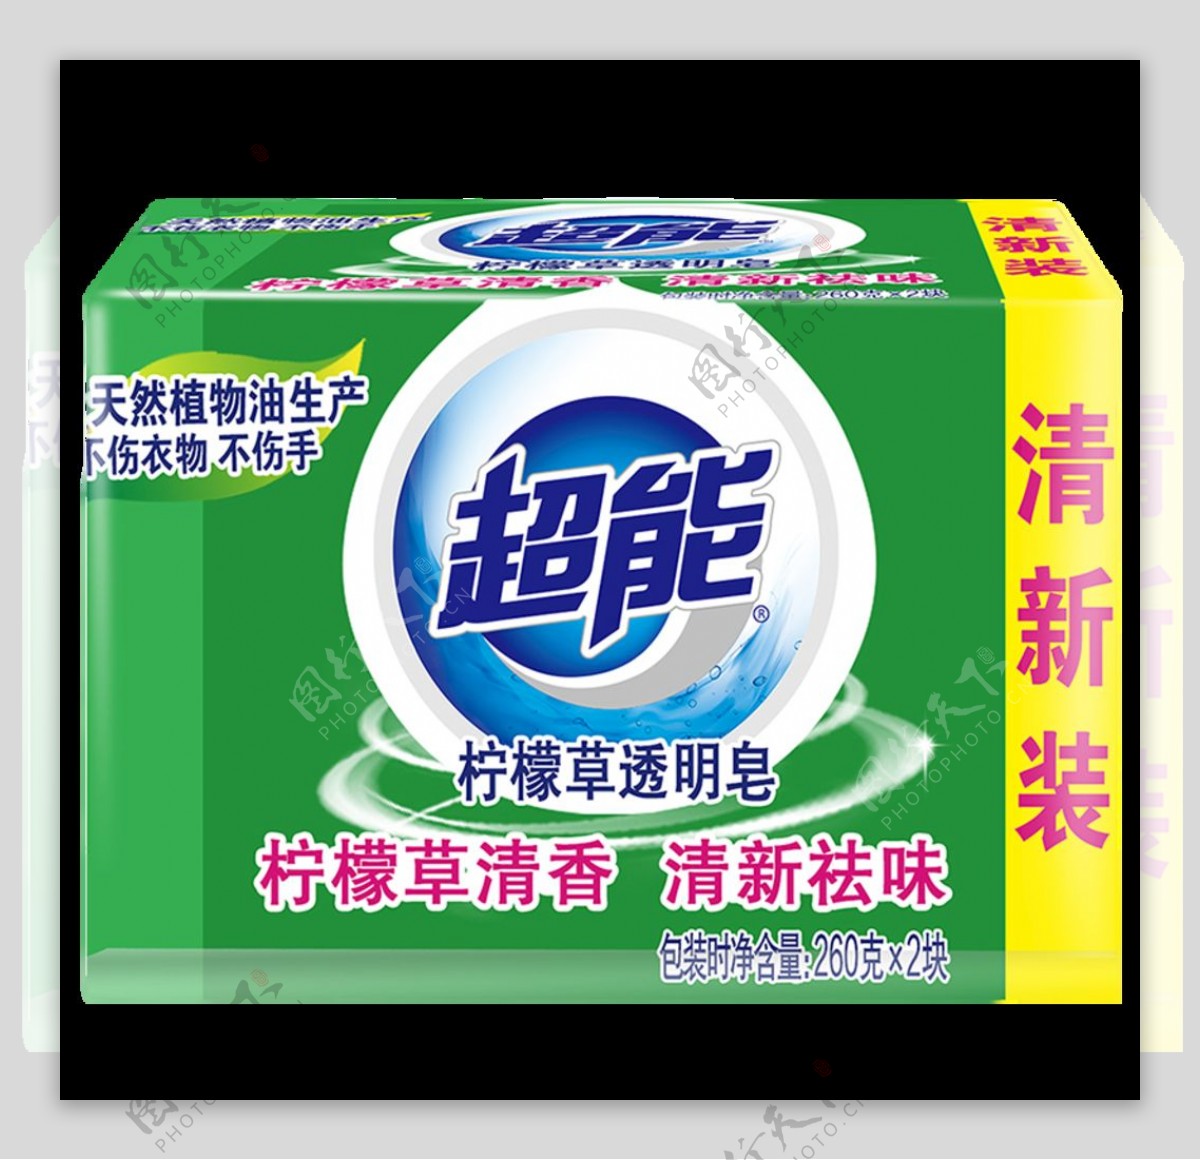 超能柠檬草透明皂2602152包装